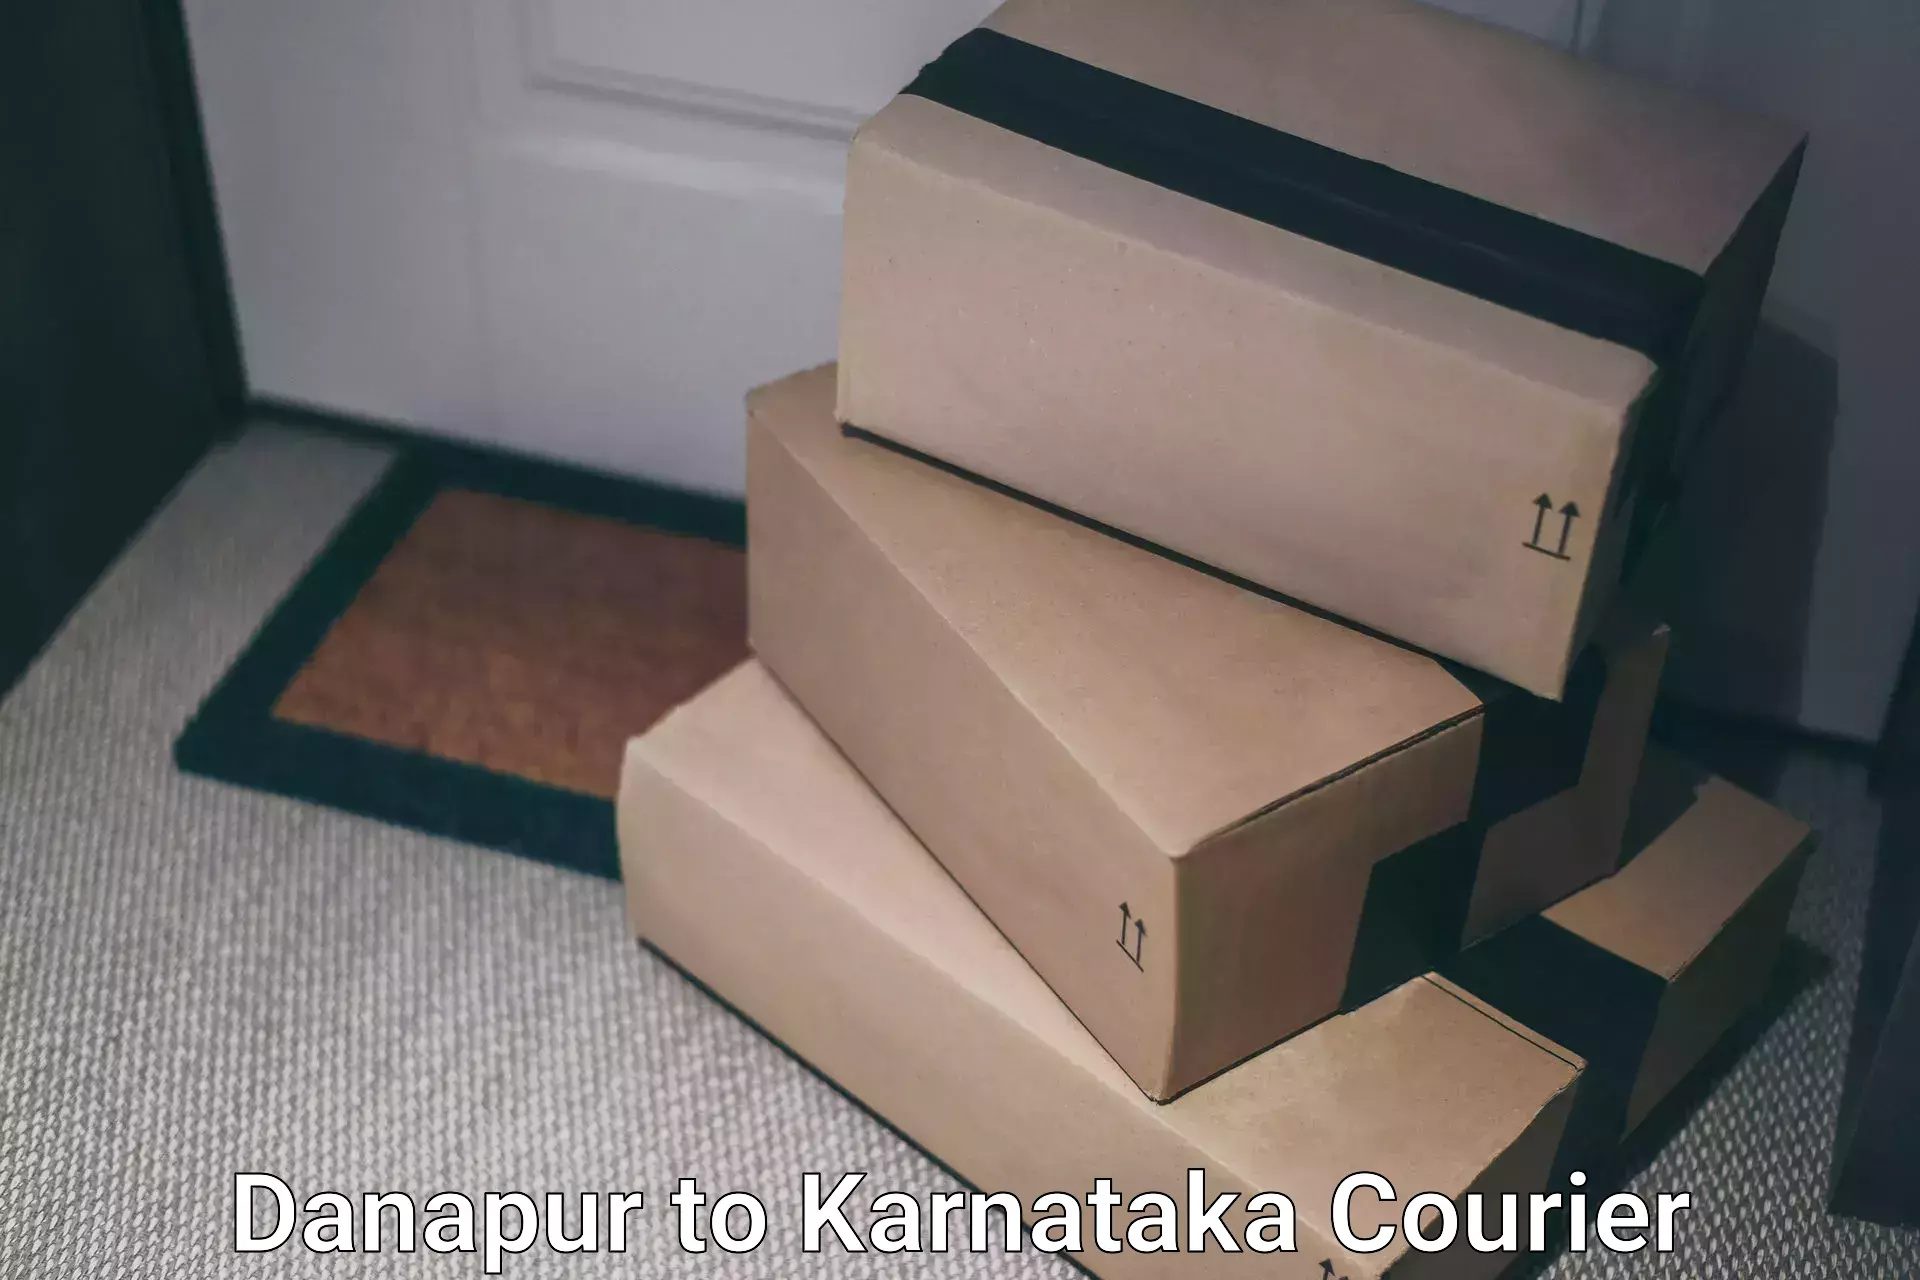 Modern courier technology Danapur to Chikkanayakanahalli